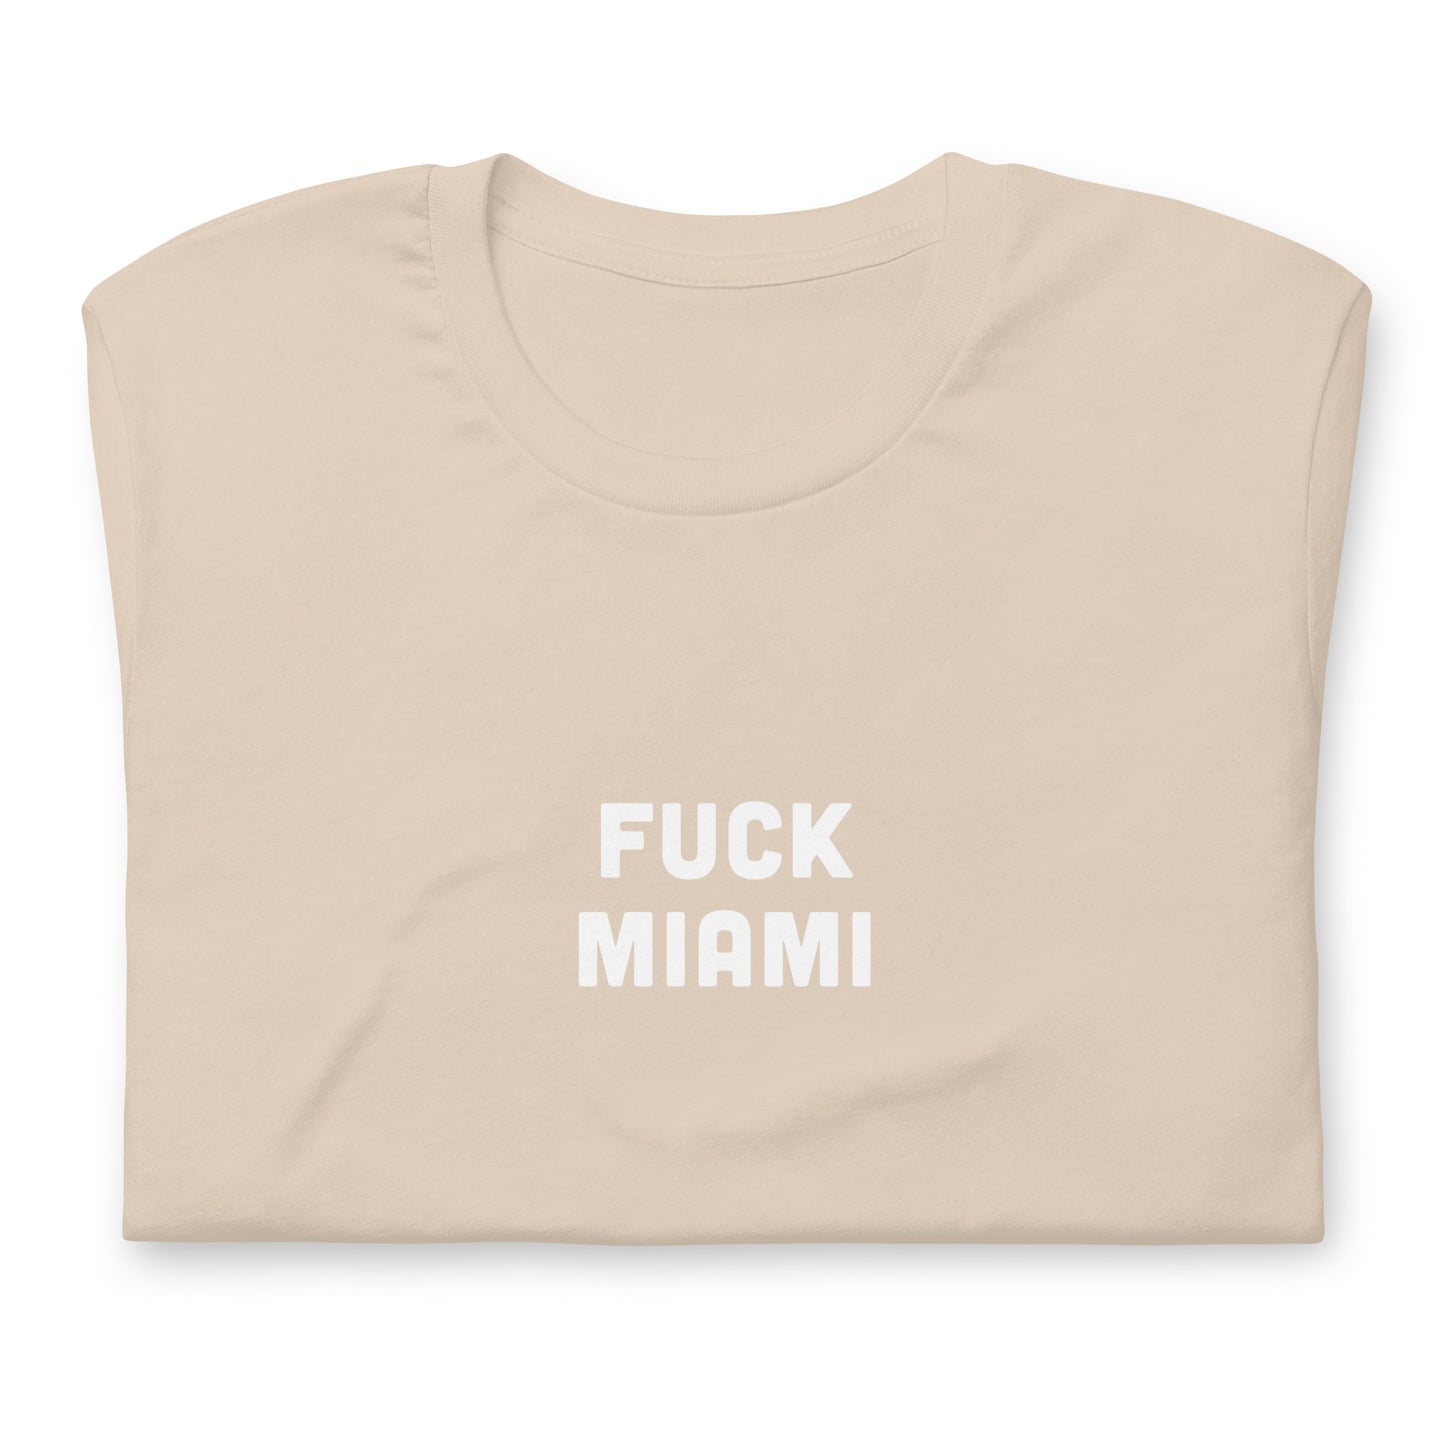 Fuck Miami T-Shirt Size L Color Asphalt